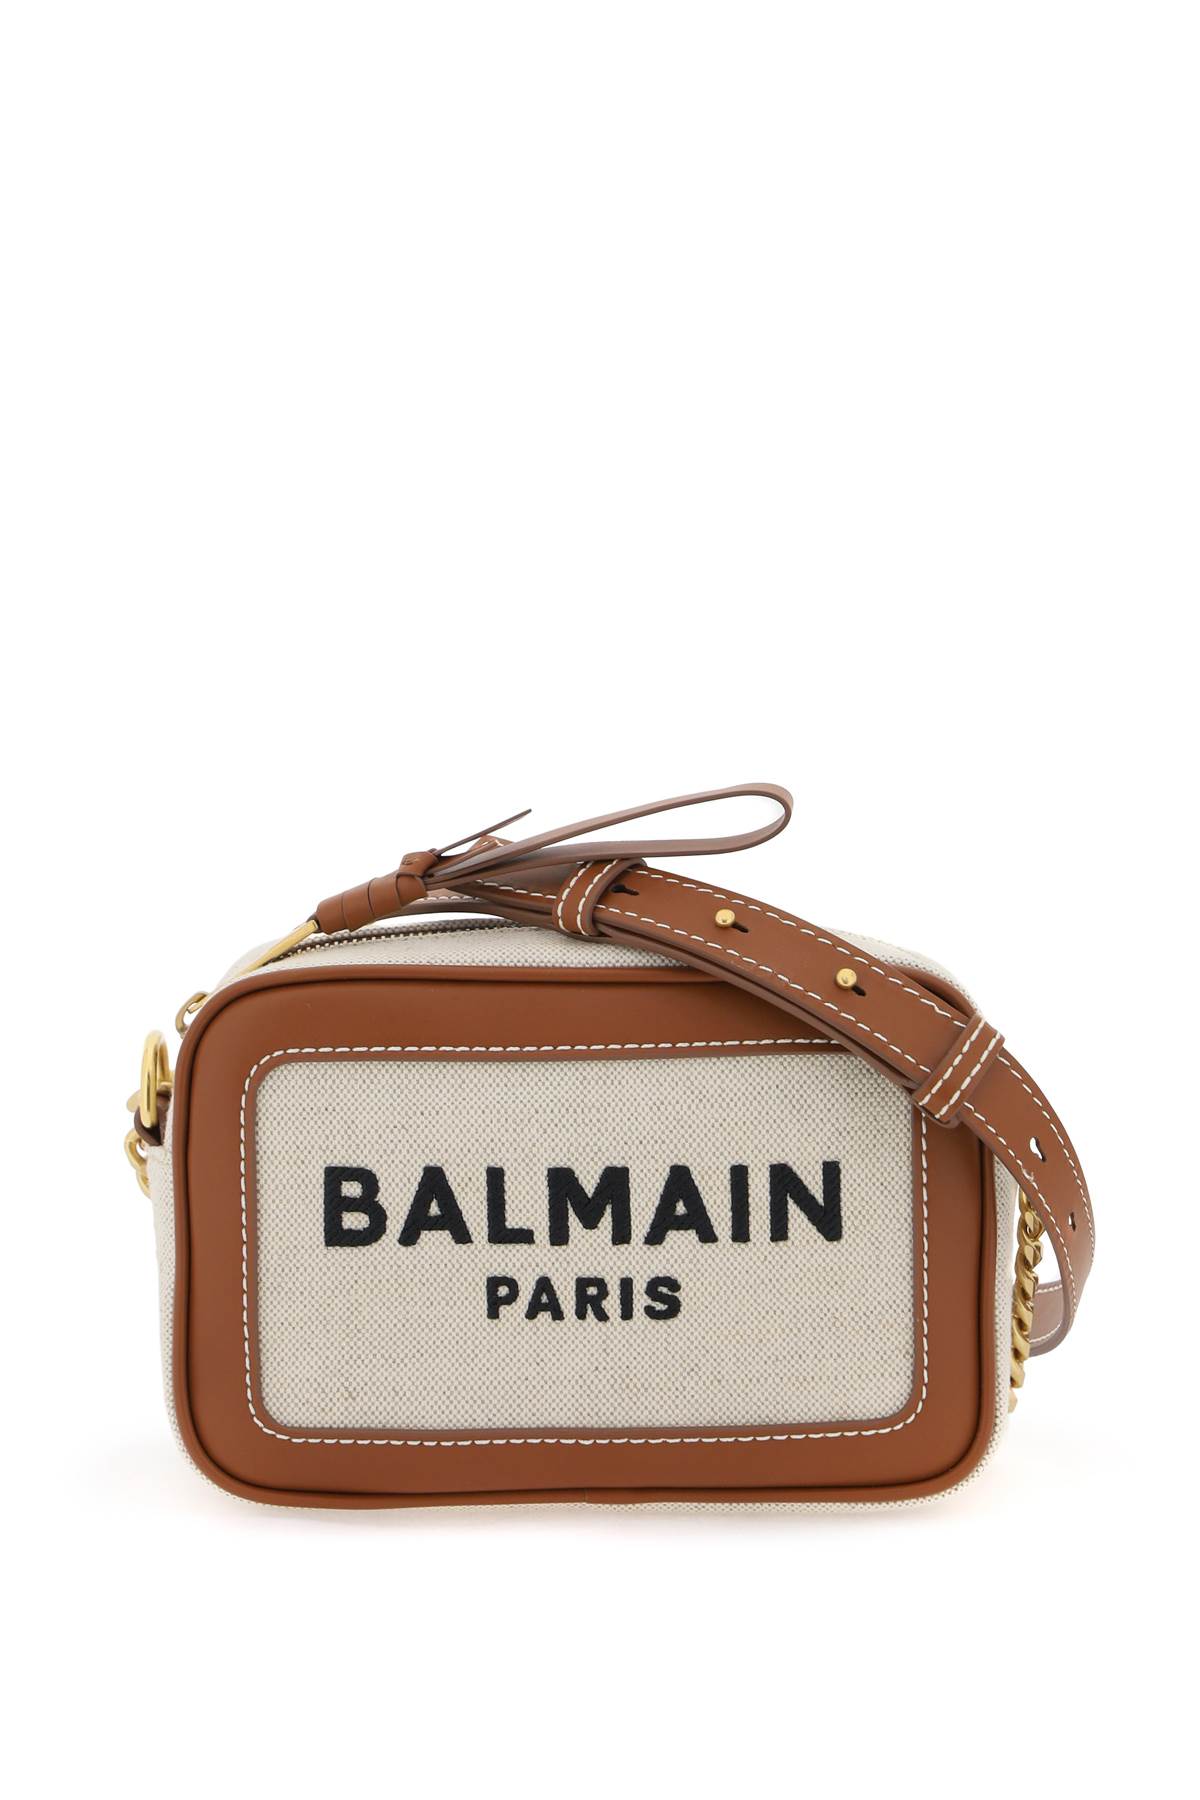 Balmain B-army Crossbody Bag